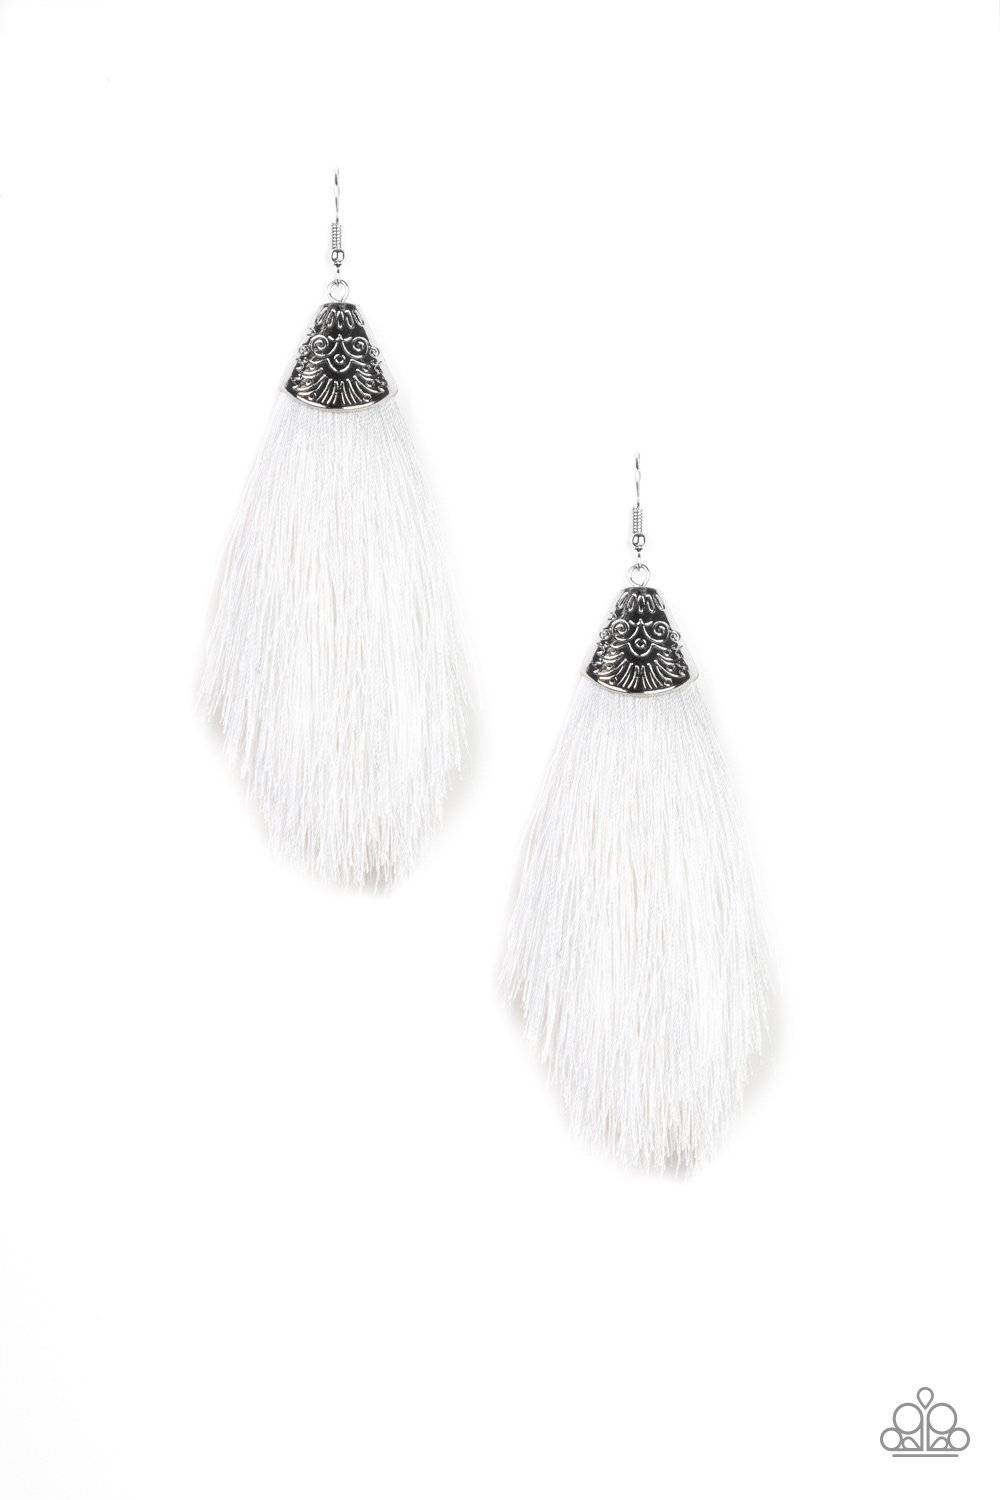 Tassel Temptress - White Tassel Earrings - Paparazzi Accessories - GlaMarous Titi Jewels